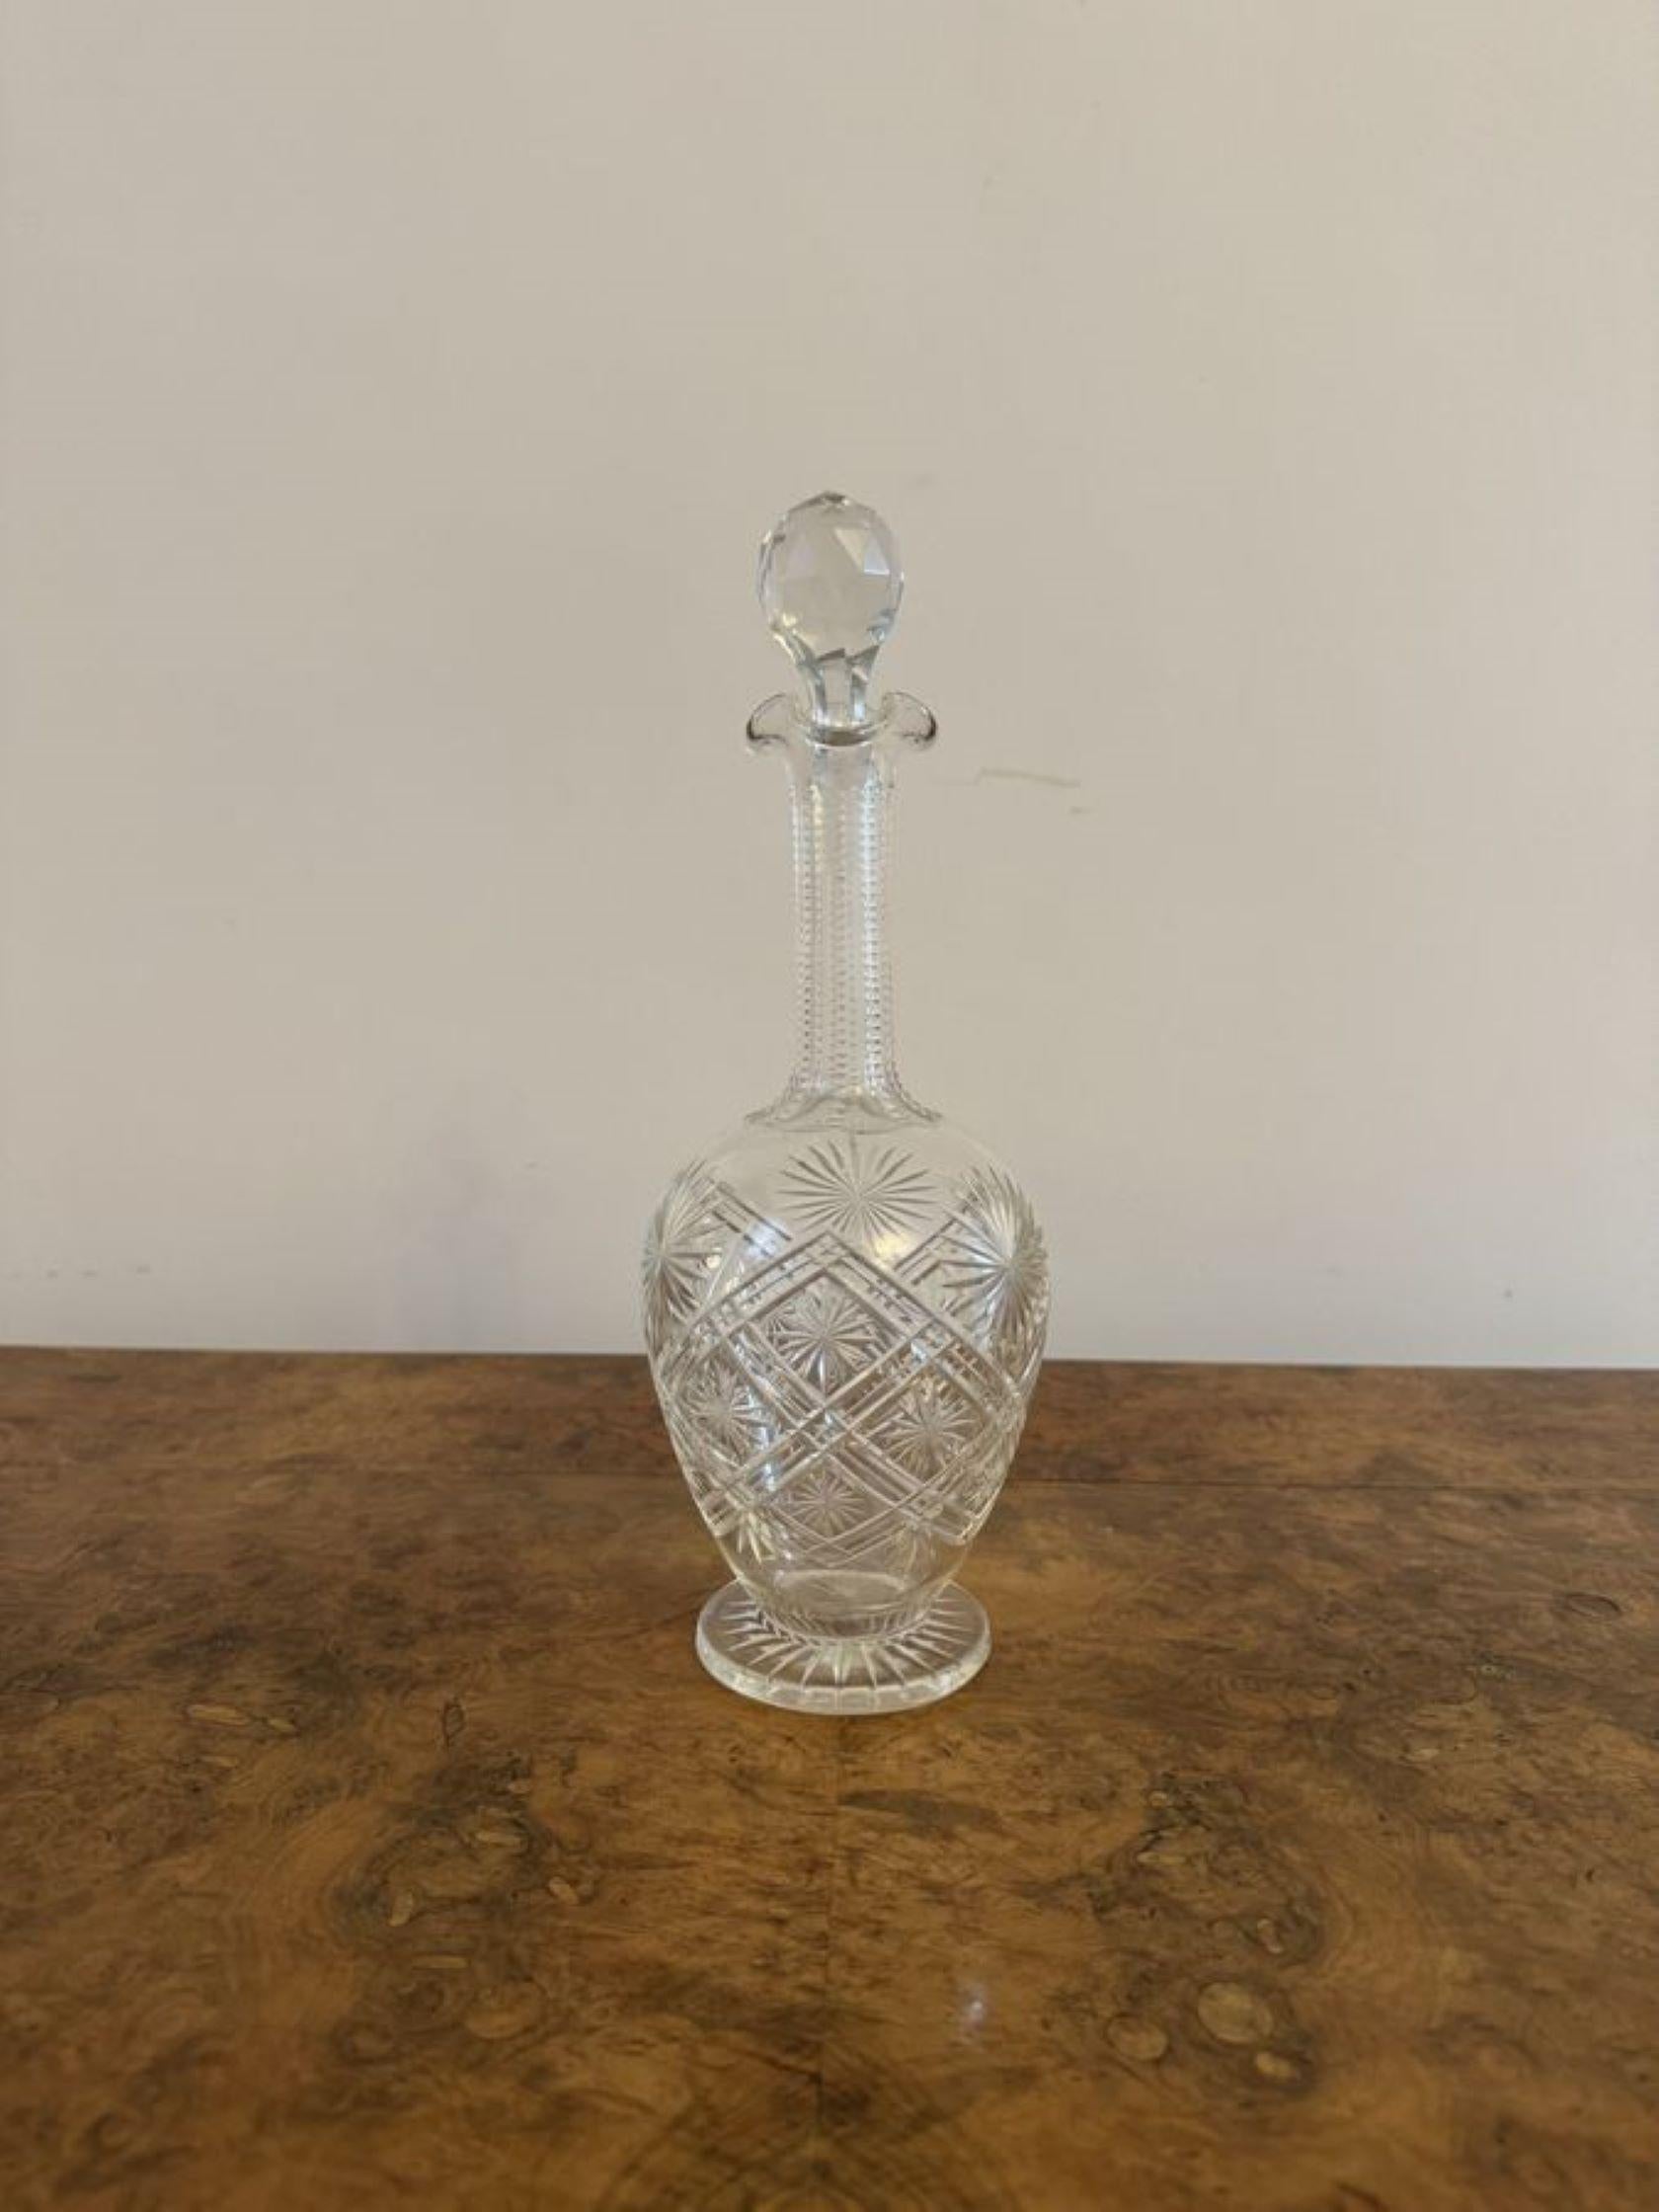 Atemberaubende Qualität antiken viktorianischen geschliffenem Glas Dekanter, mit einer Qualität antiken viktorianischen geschliffenem Glas Dekanter mit einem wellenförmigen oben, auf einem runden Sockel erhöht. 

D. 1880